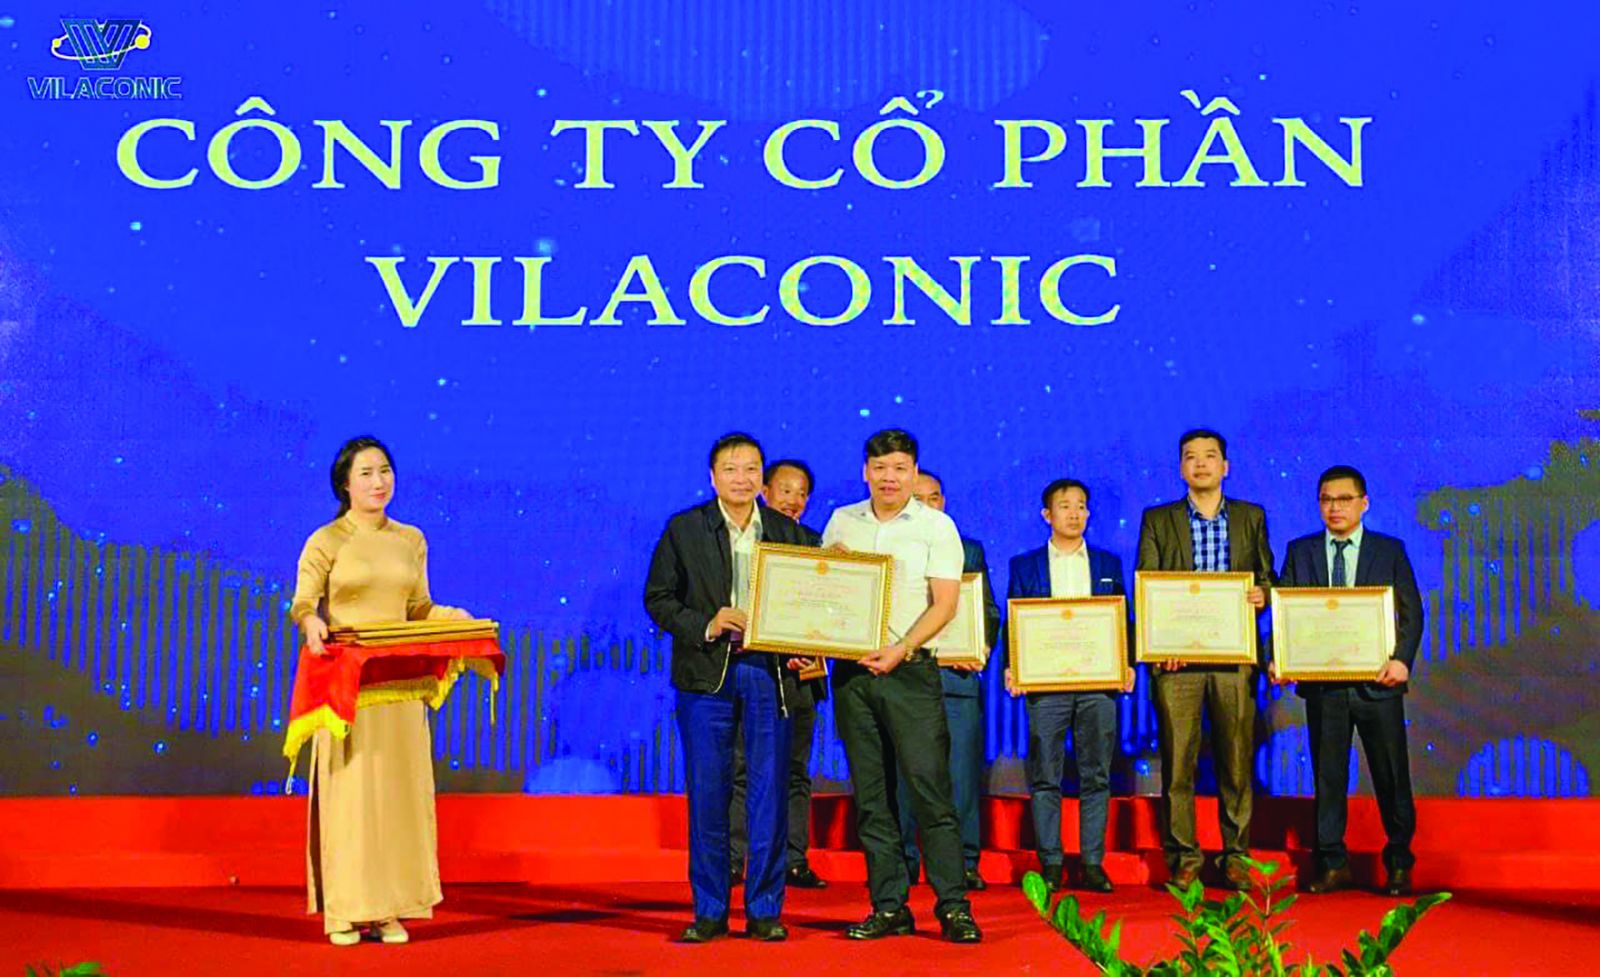  Tổng giám đốc Hoàng Văn Ngoạn nhận Bằng khen của UBND tỉnh Nghệ An về những thành tích xuất sắc trong lĩnh vực xuất nhập khẩu